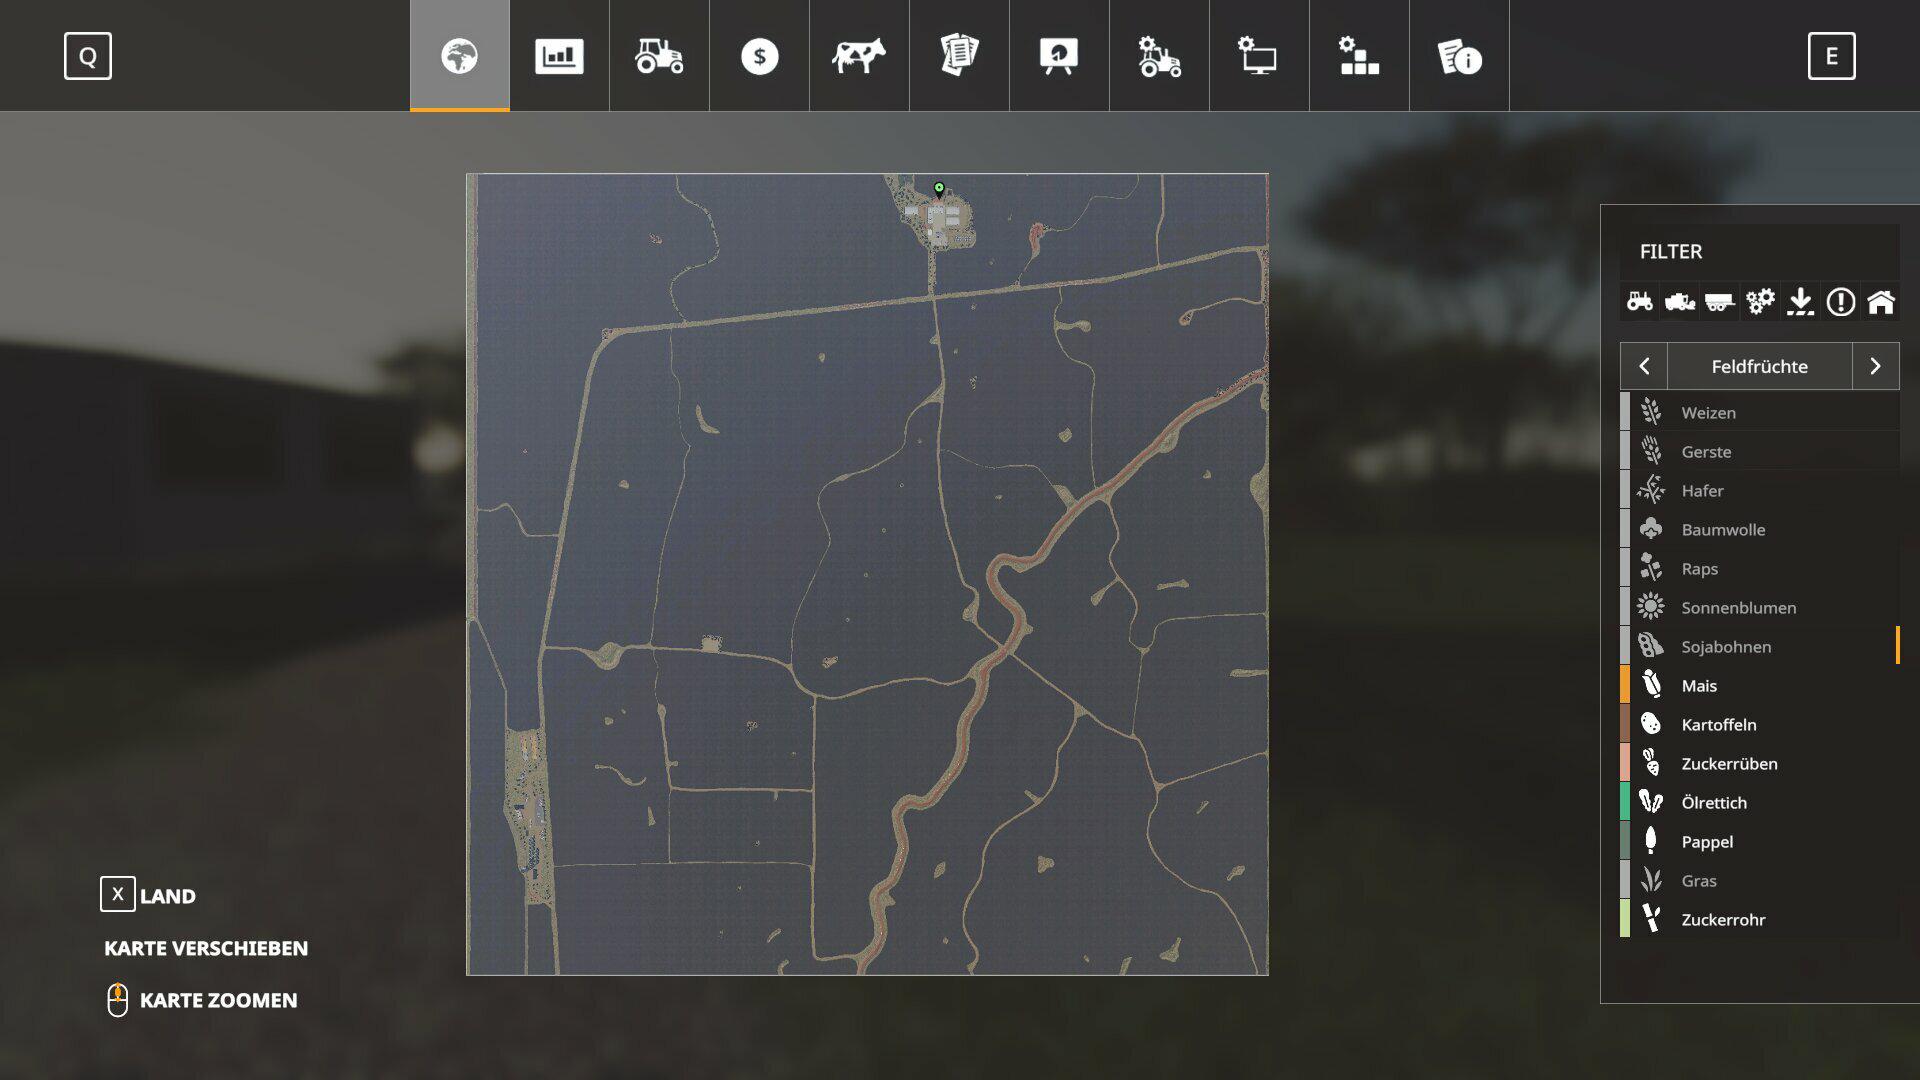 LS19,Maps & Gebäude,4fach Maps,,Western Australia